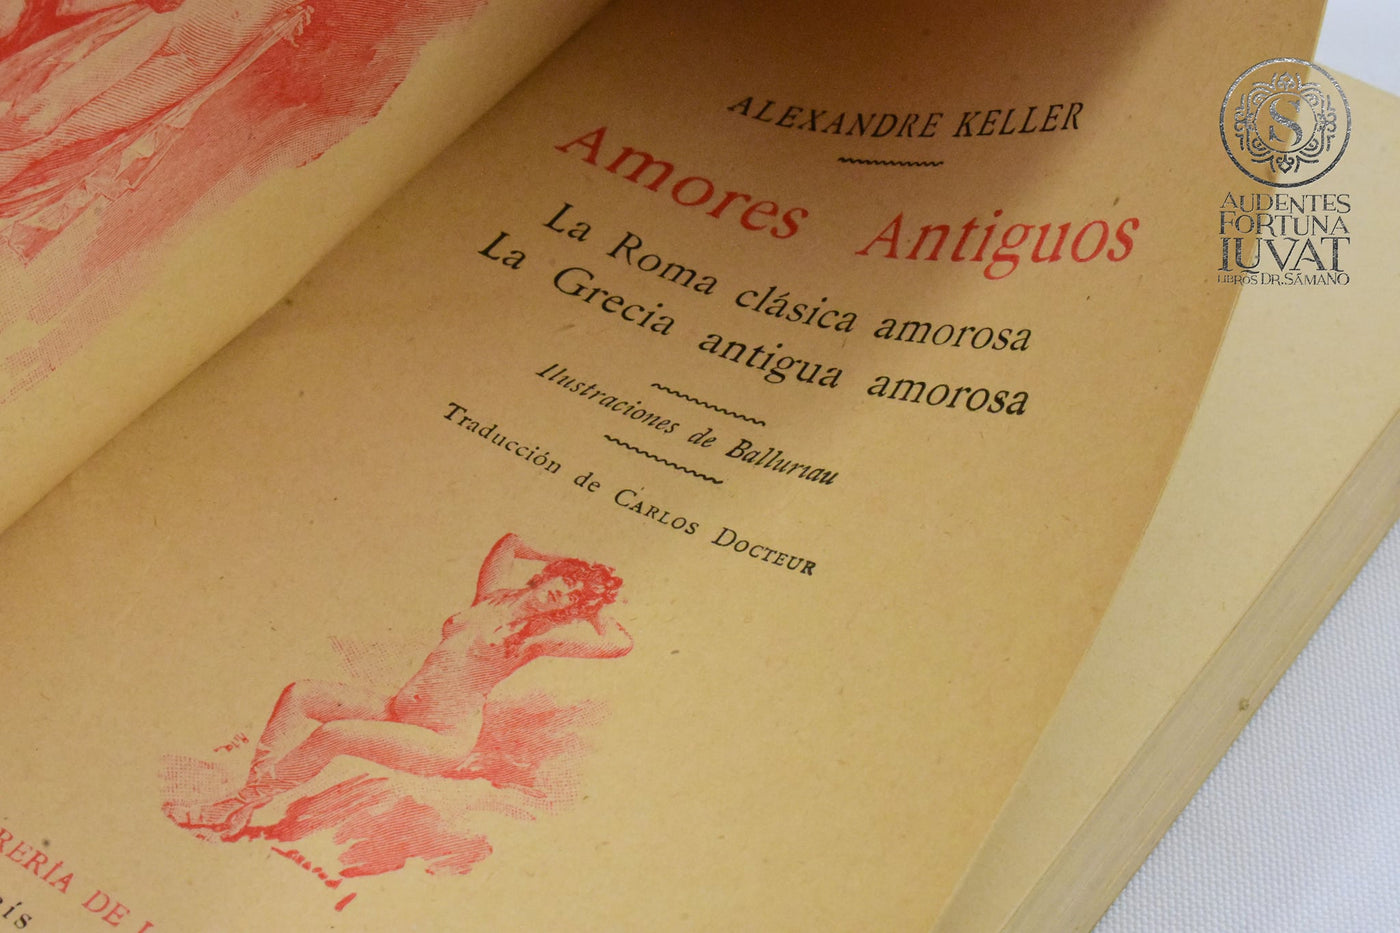 "Amores Antiguos: La Roma clásica amorosa y La Grecia antigua amorosa" - ALEXANDRE KELLER